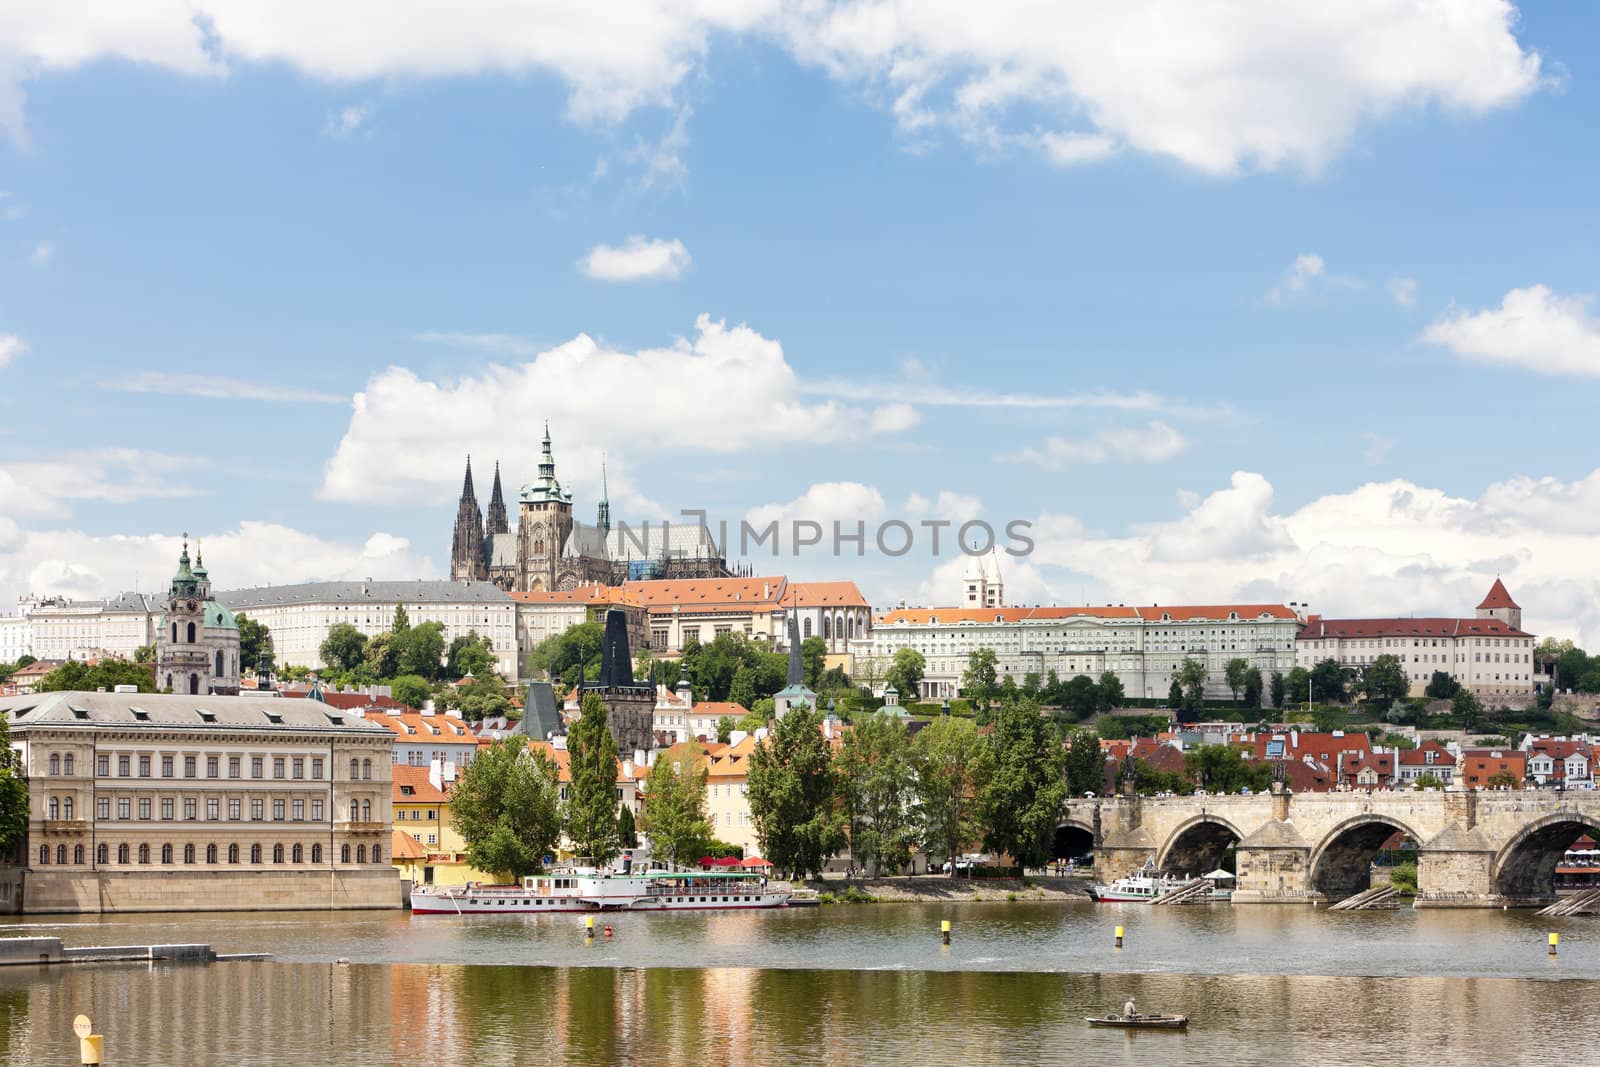 Hradcany with Charles bridge, Prague, Czech Republic by phbcz